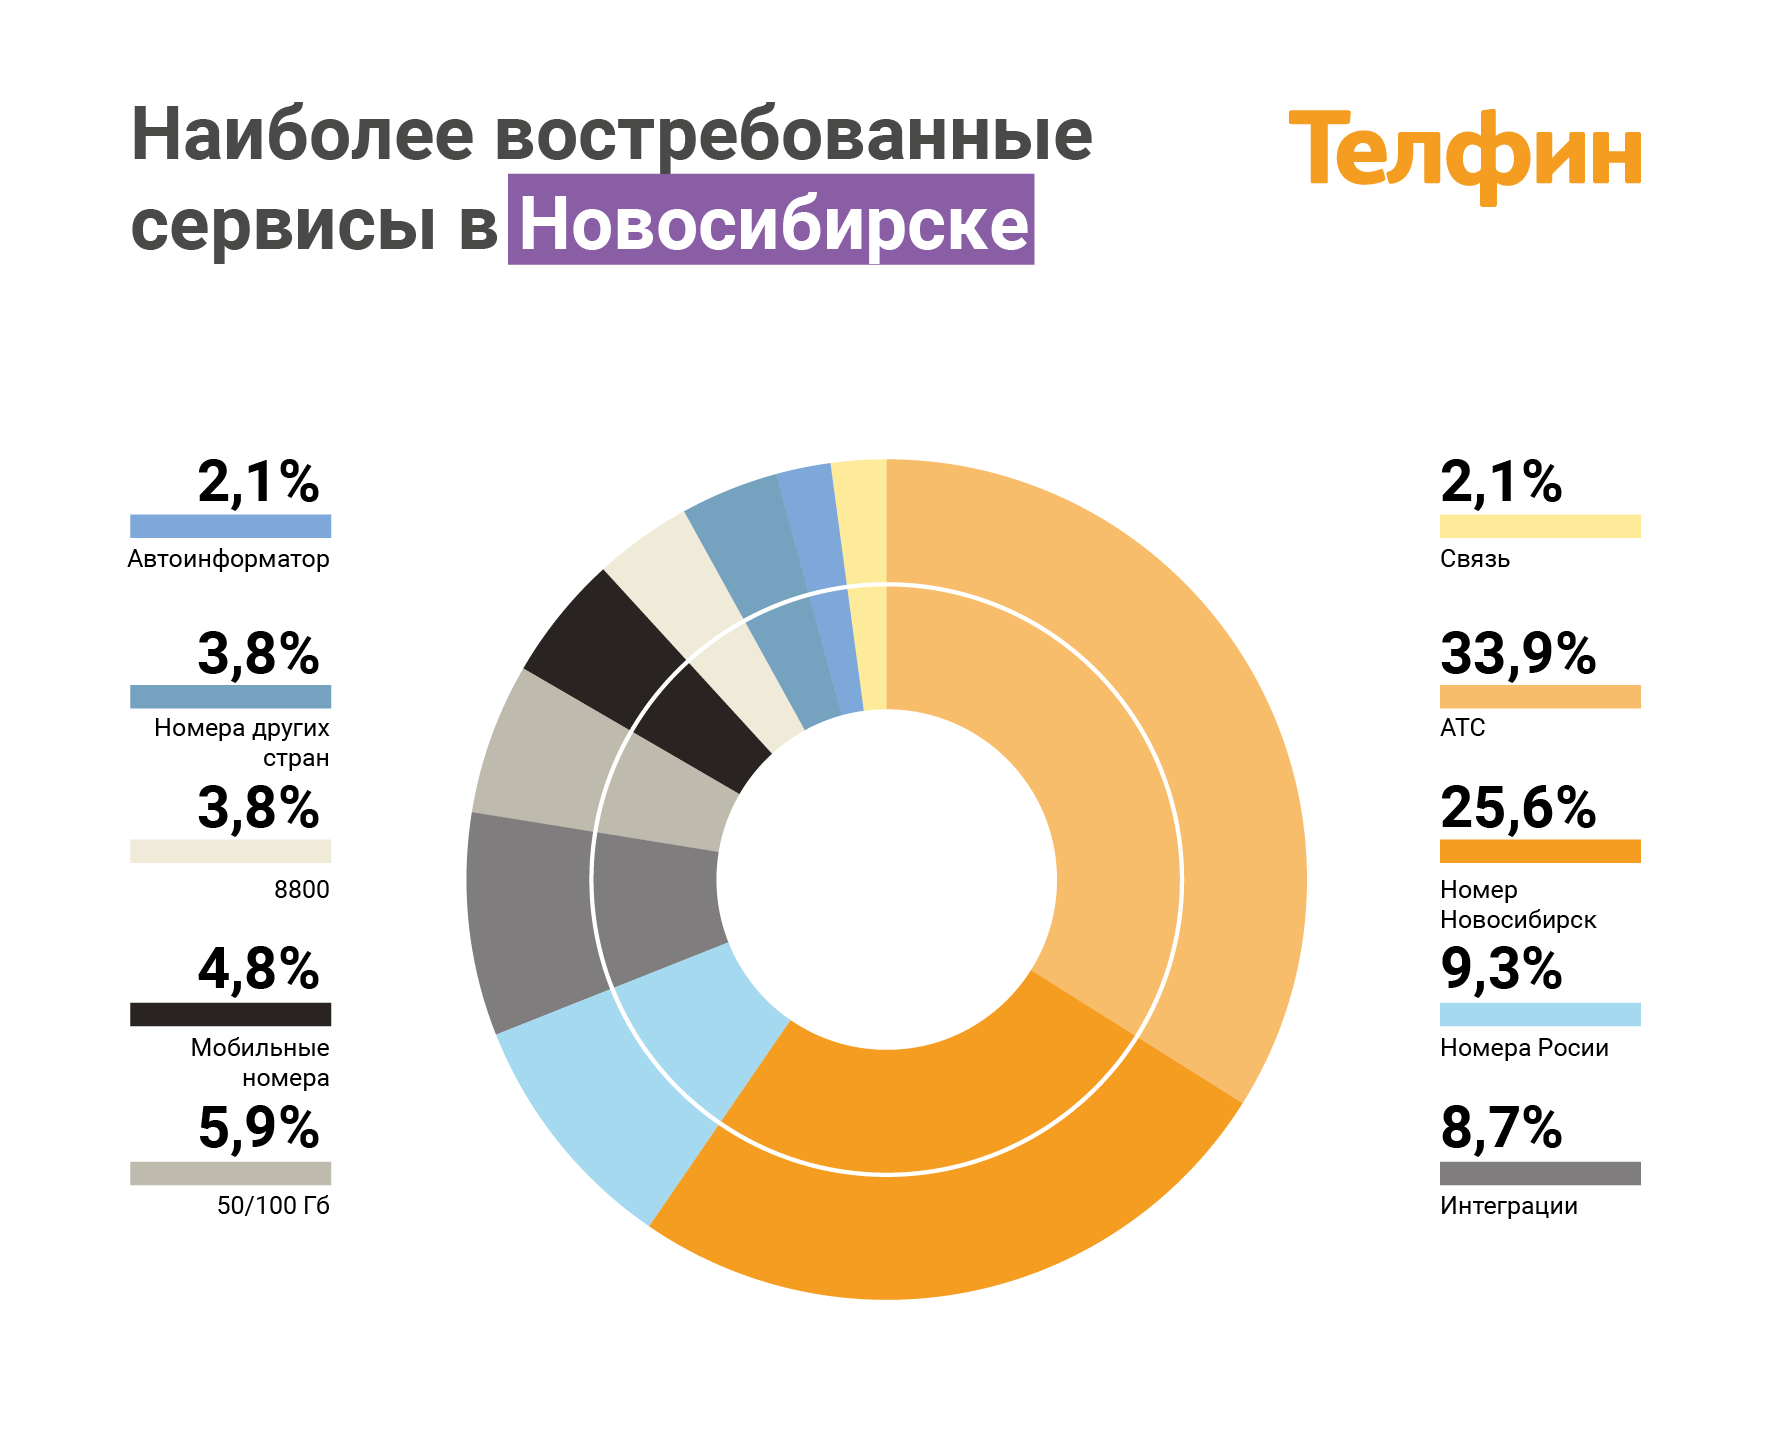 Наиболее востребованные сервисы ip-телефонии в Новосибирске